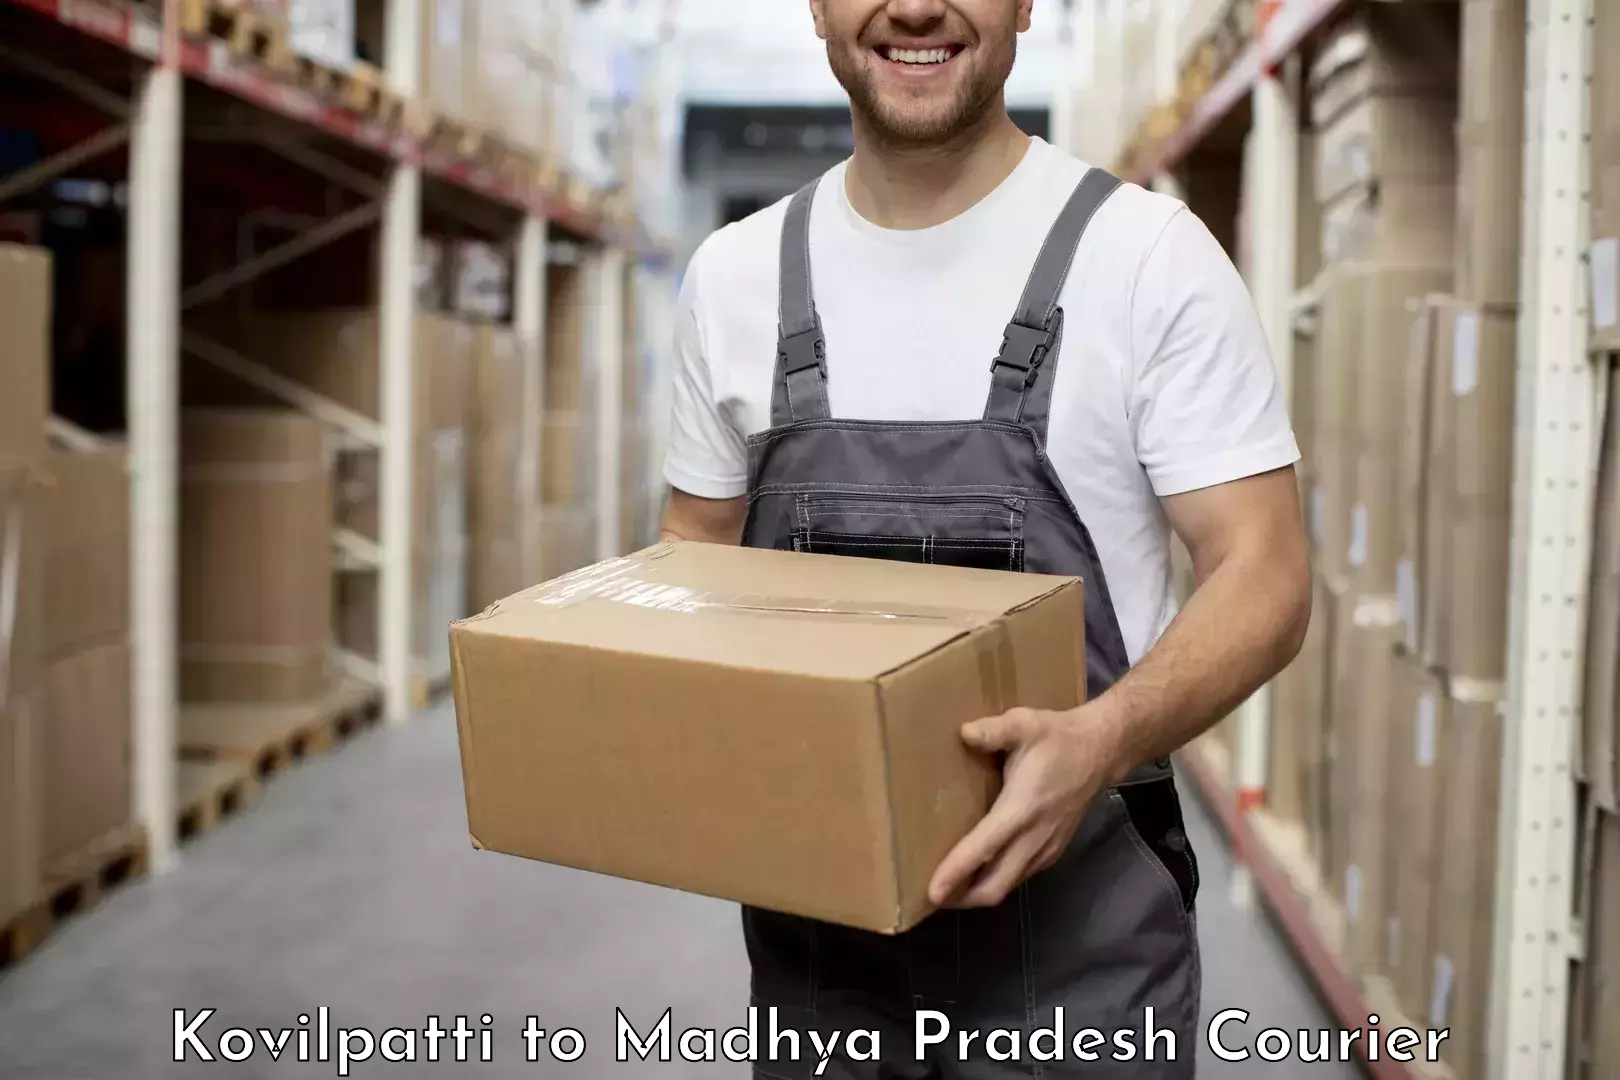 Courier service innovation Kovilpatti to Chandla